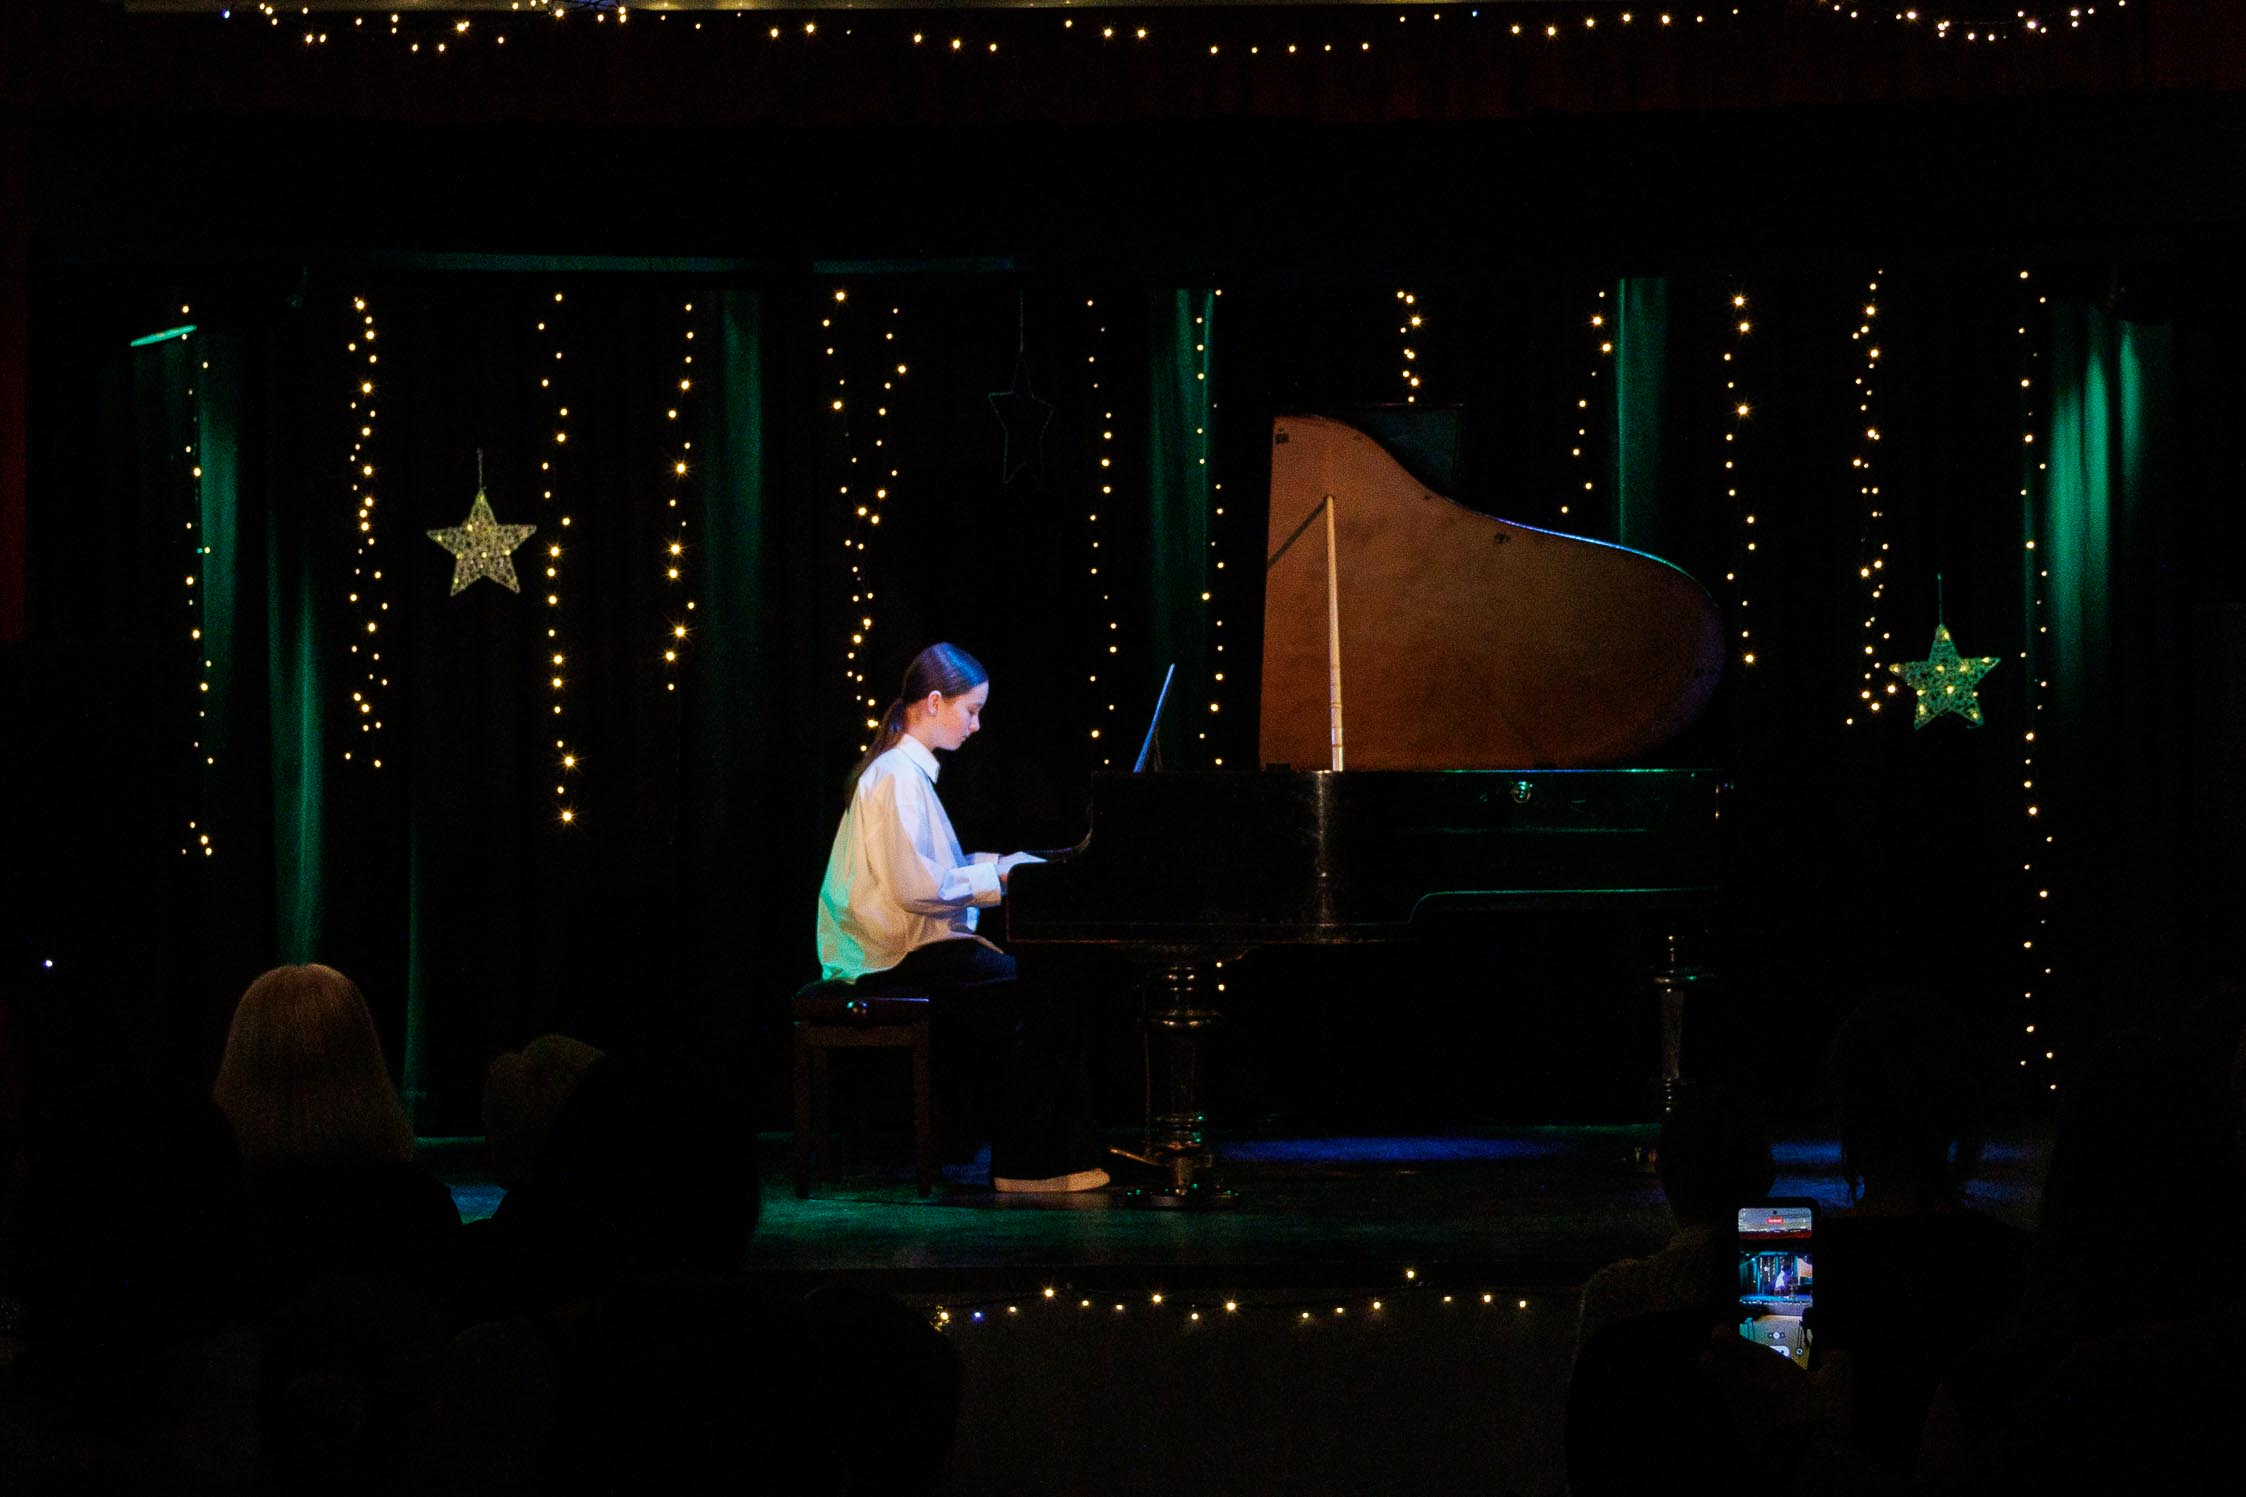 widok na scenę , dziewczyna, dziecko gra na fortepianie, w tle scena, oświetlona, kolorowa